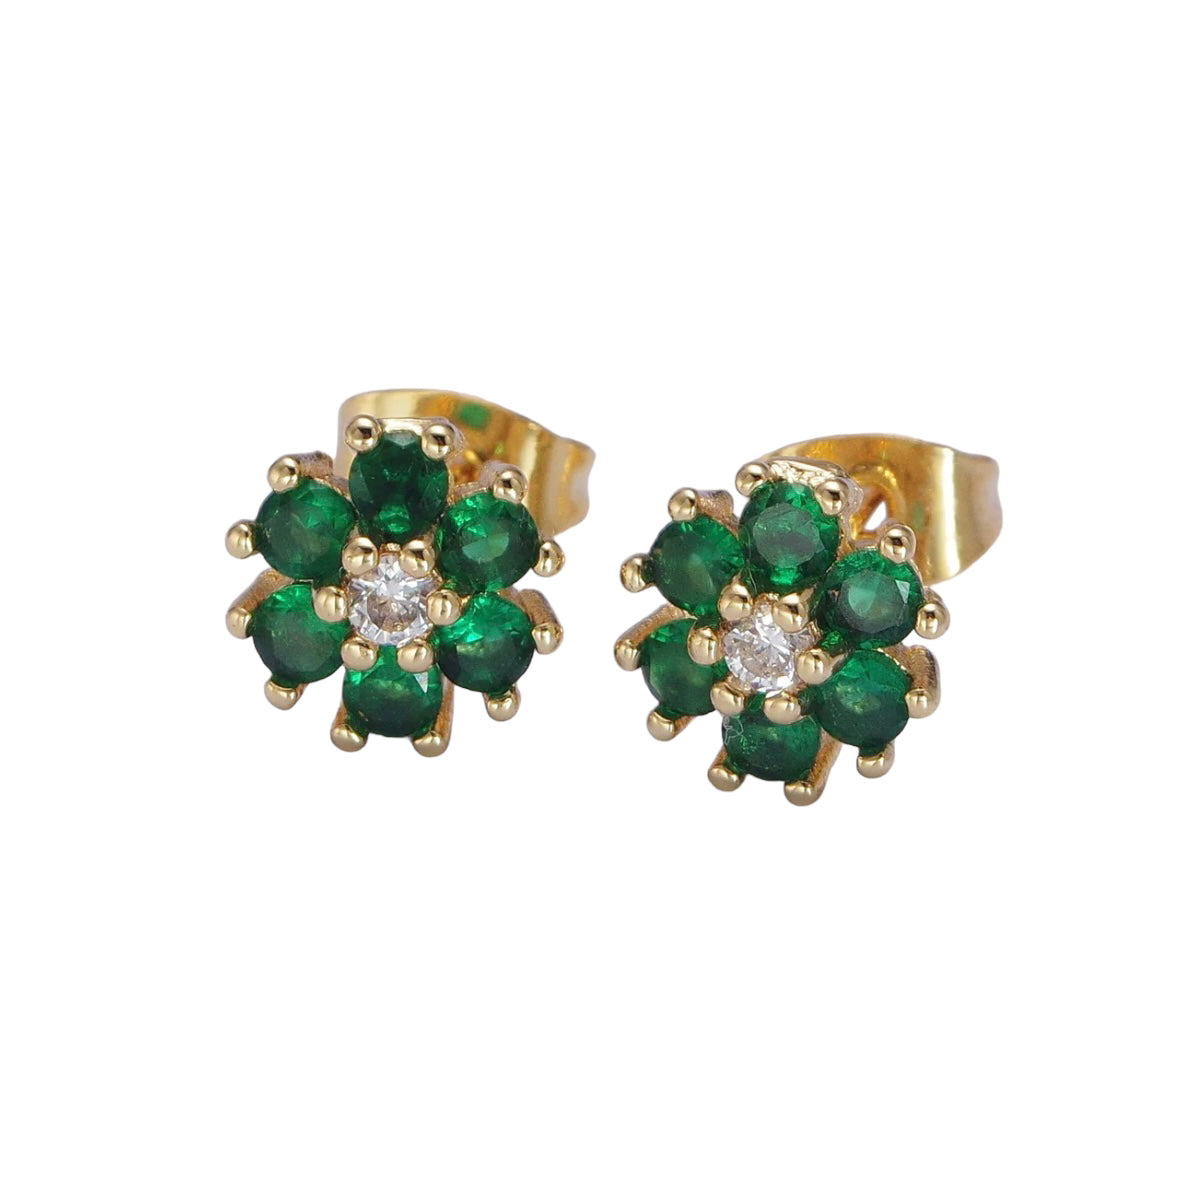 24K Gold Filled Dainty Emerald Green Flower Stud Earrings